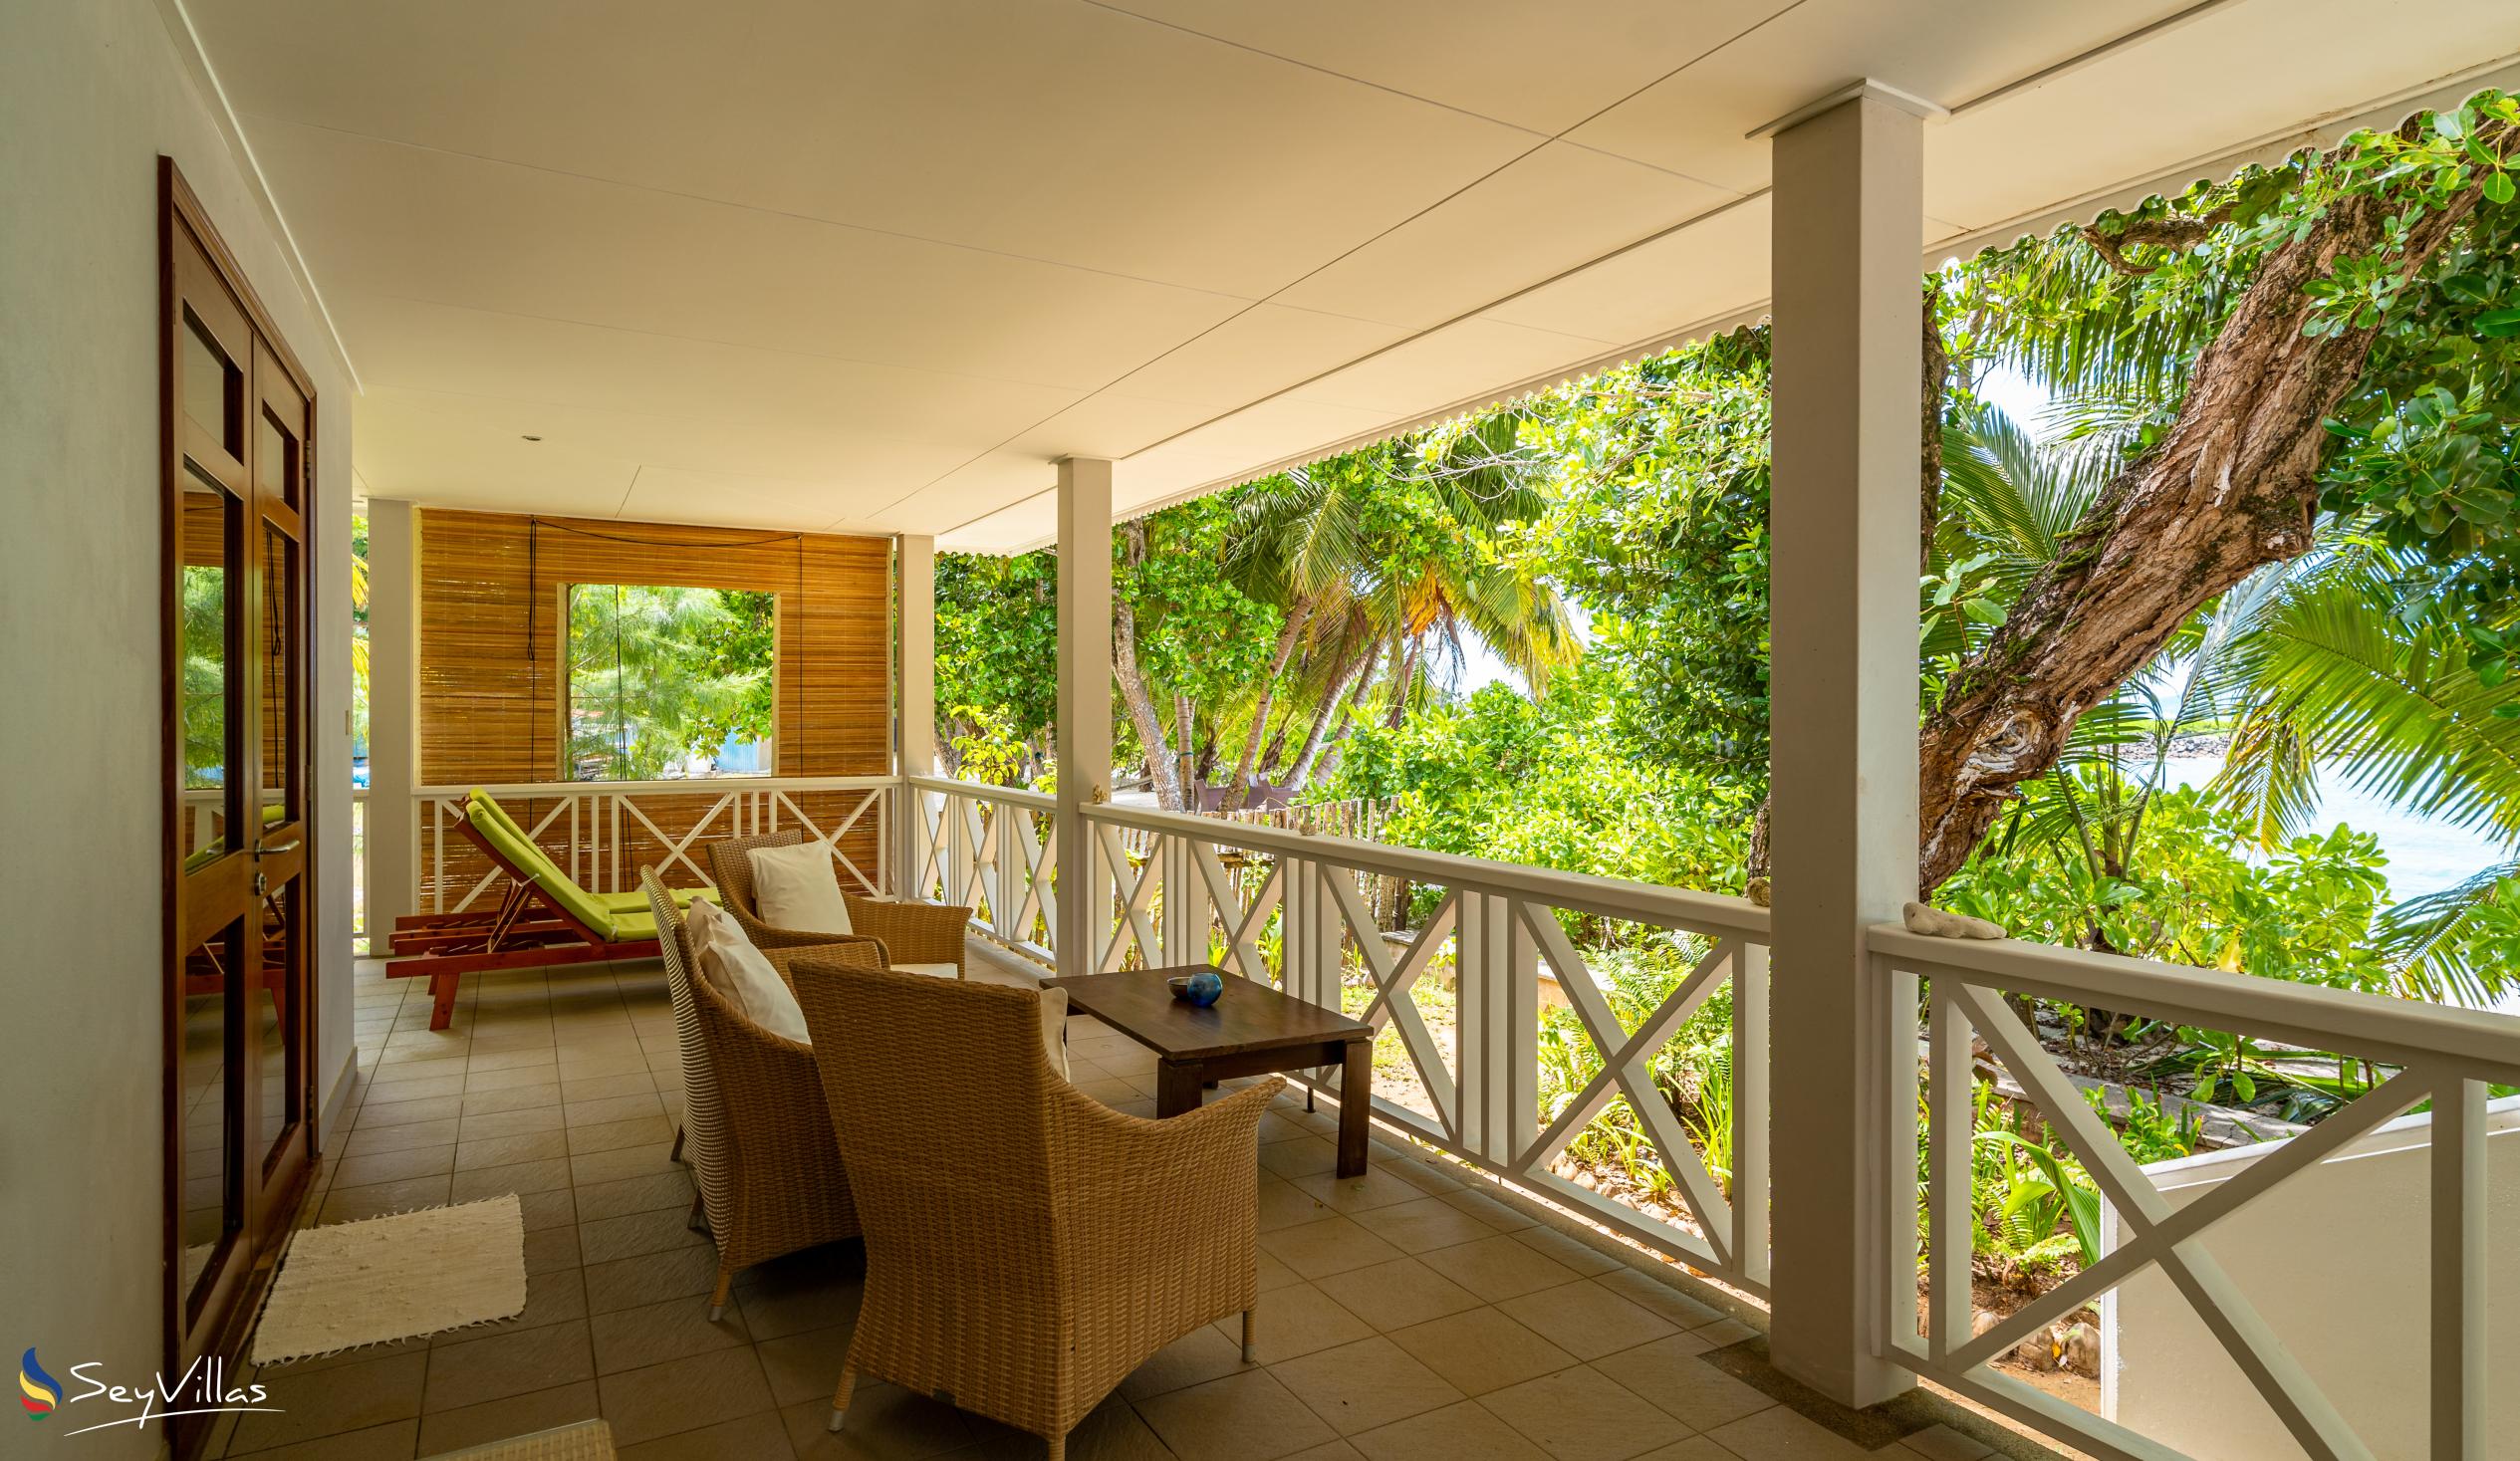 Photo 174: La Belle Tortue - Private Villa - Silhouette Island (Seychelles)